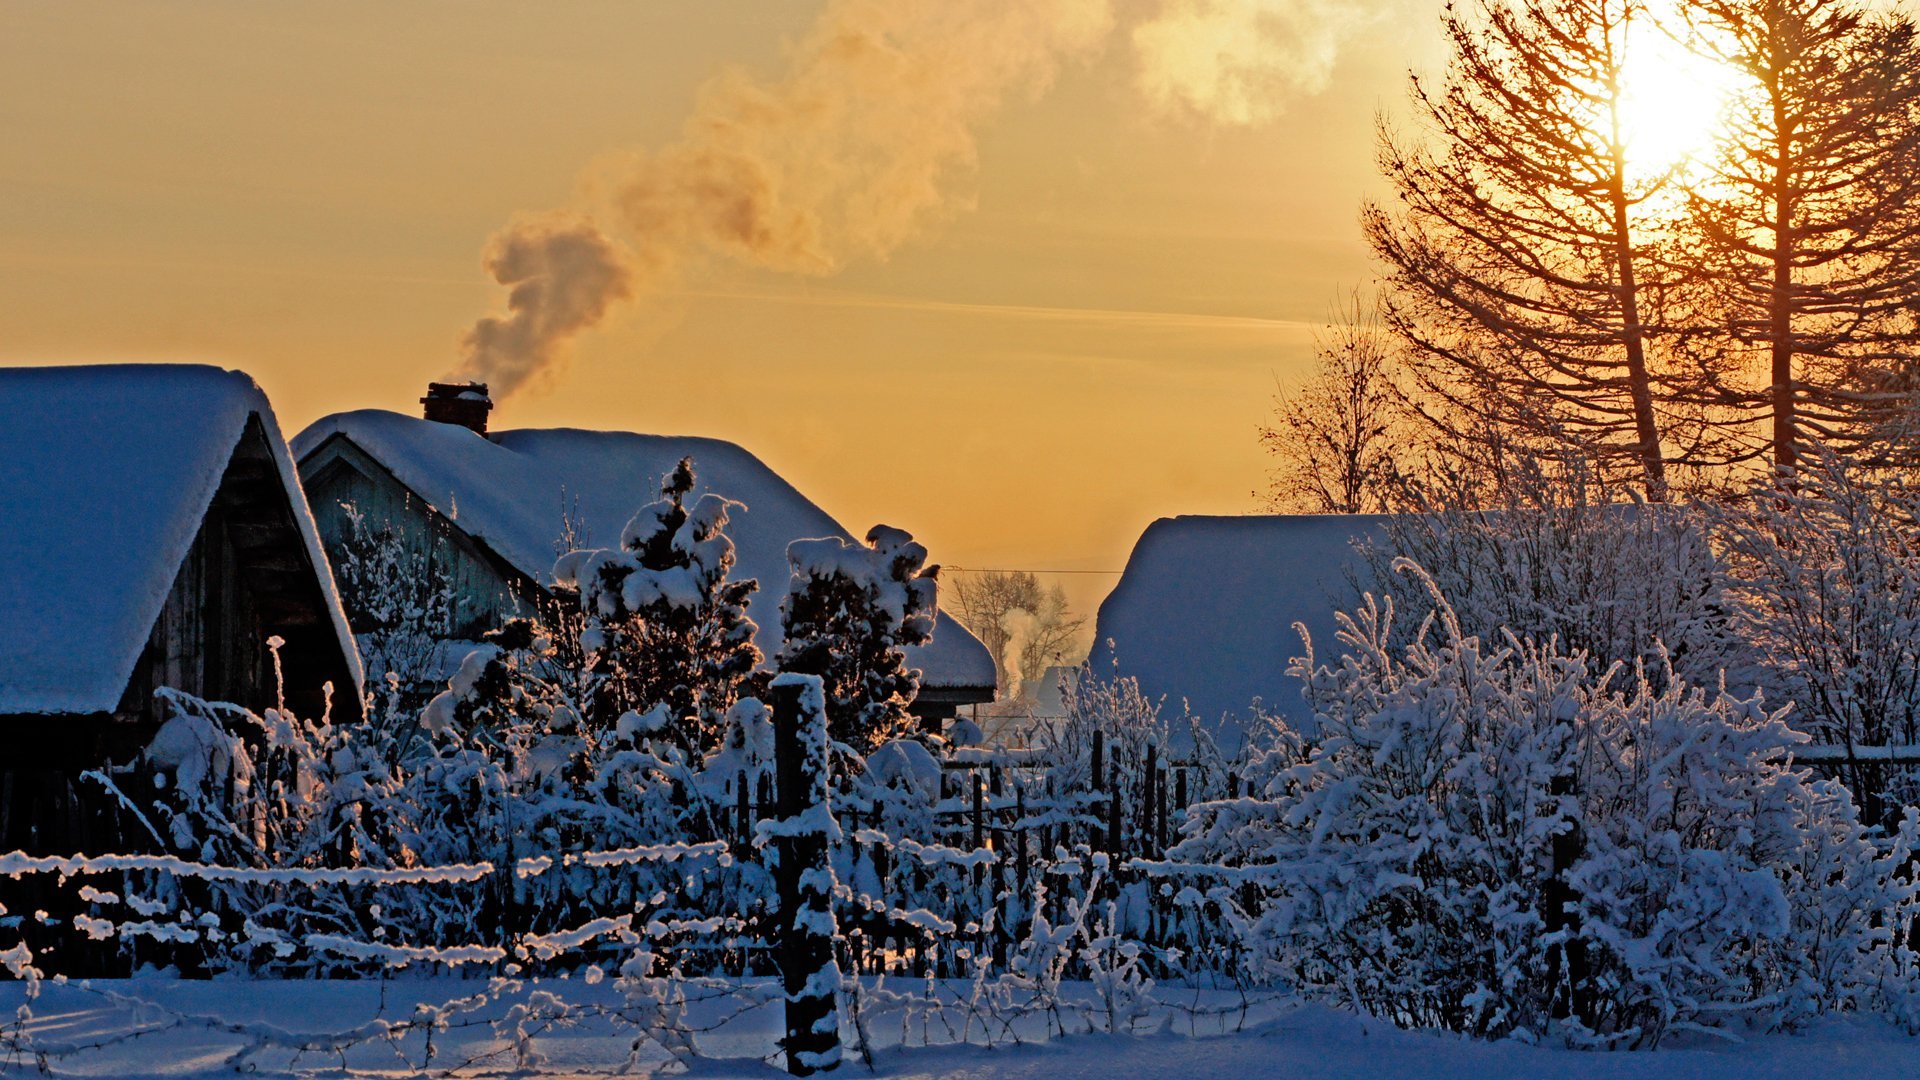 Снегом укрыты дома. Зимняя деревня. Зима в деревне. Деревенский домик зимой. Деревня в снегу.